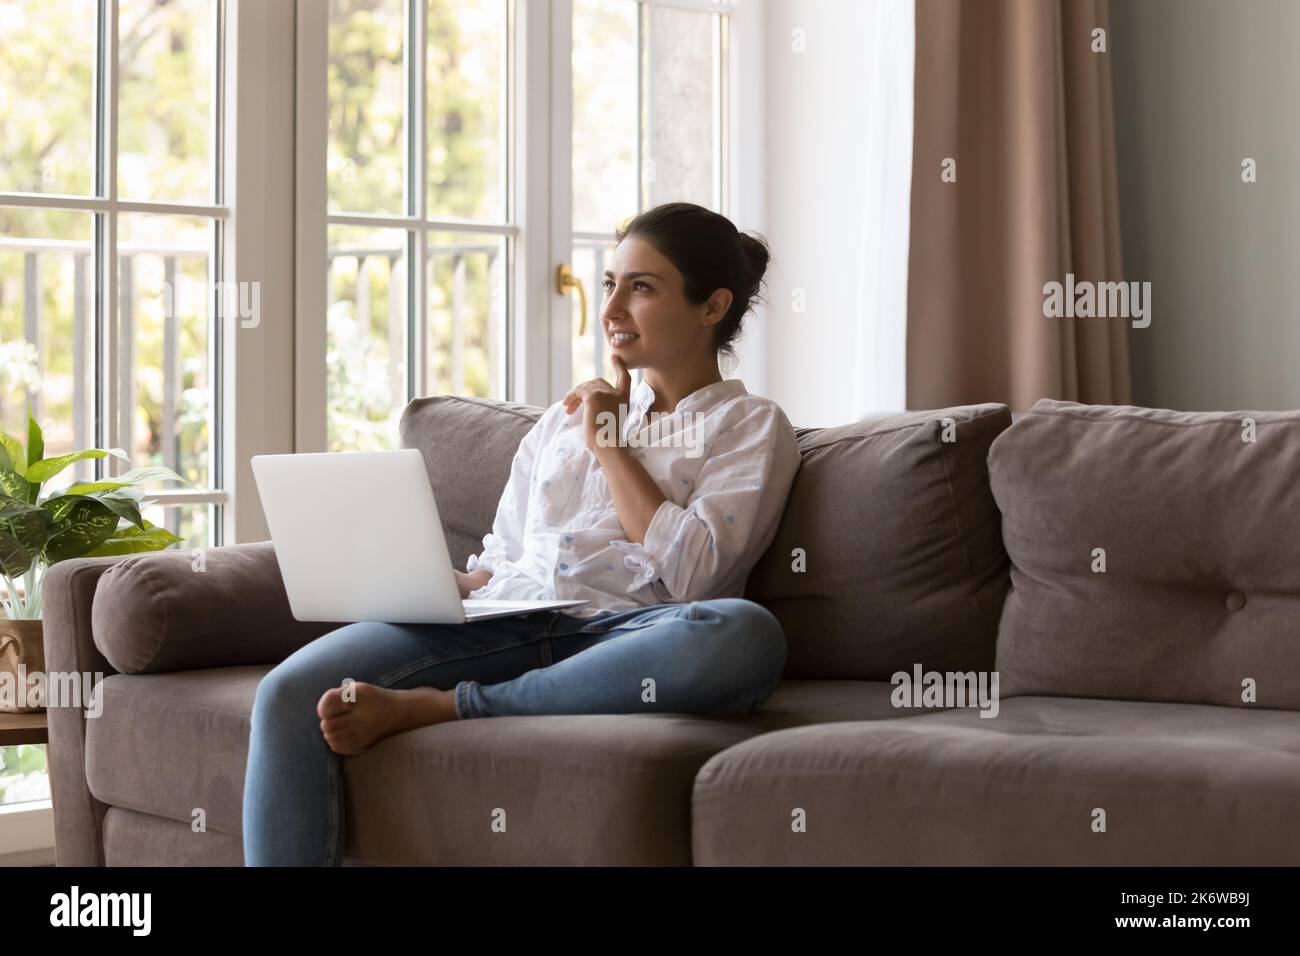 Une jeune femme indienne pensive s'assoit sur un canapé avec un ordinateur portable Banque D'Images